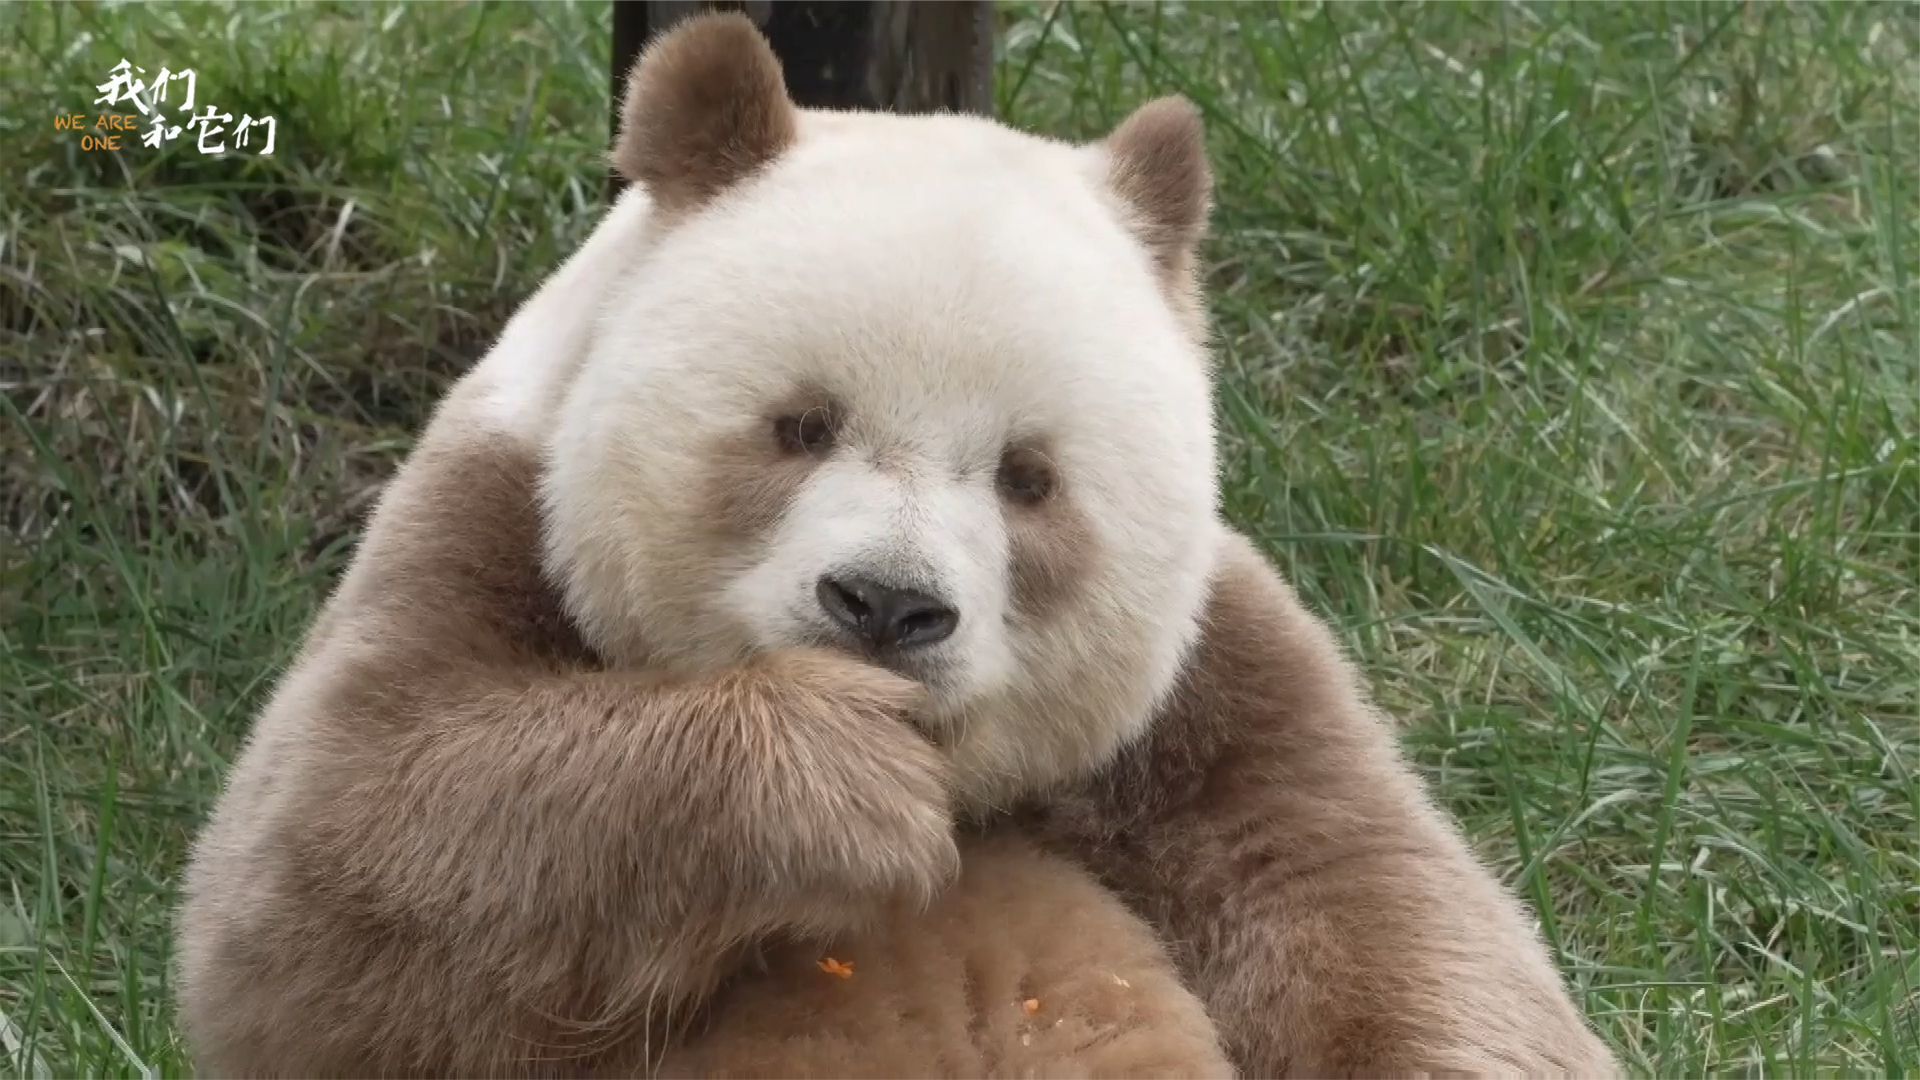 七仔！全球唯一棕色大熊猫！😍真的实在太可爱了啦！🐼 - Silkytrend